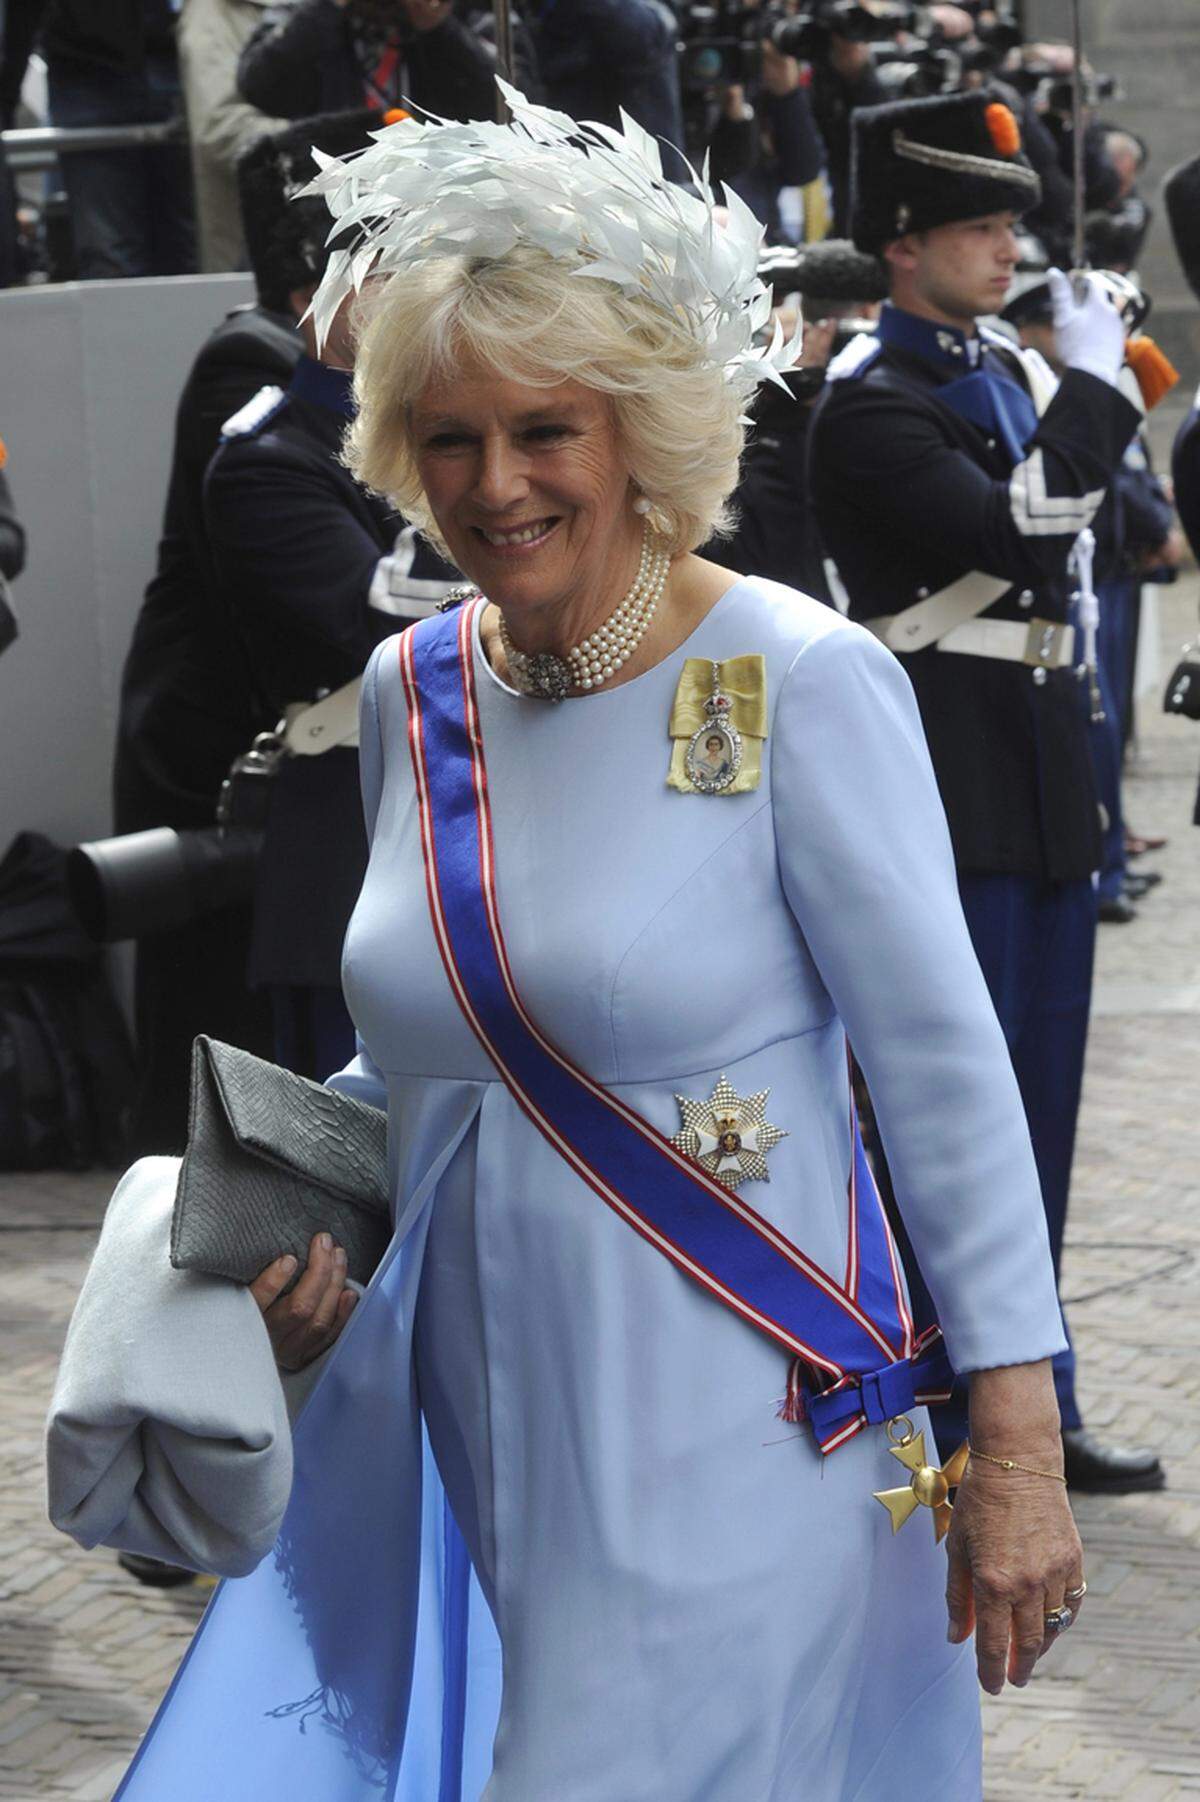 Herzogin Camilla von Cornwall schien den inoffiziellen Dresscode erraten zu haben und kam in himmelblau mit Kronprinz Charles.